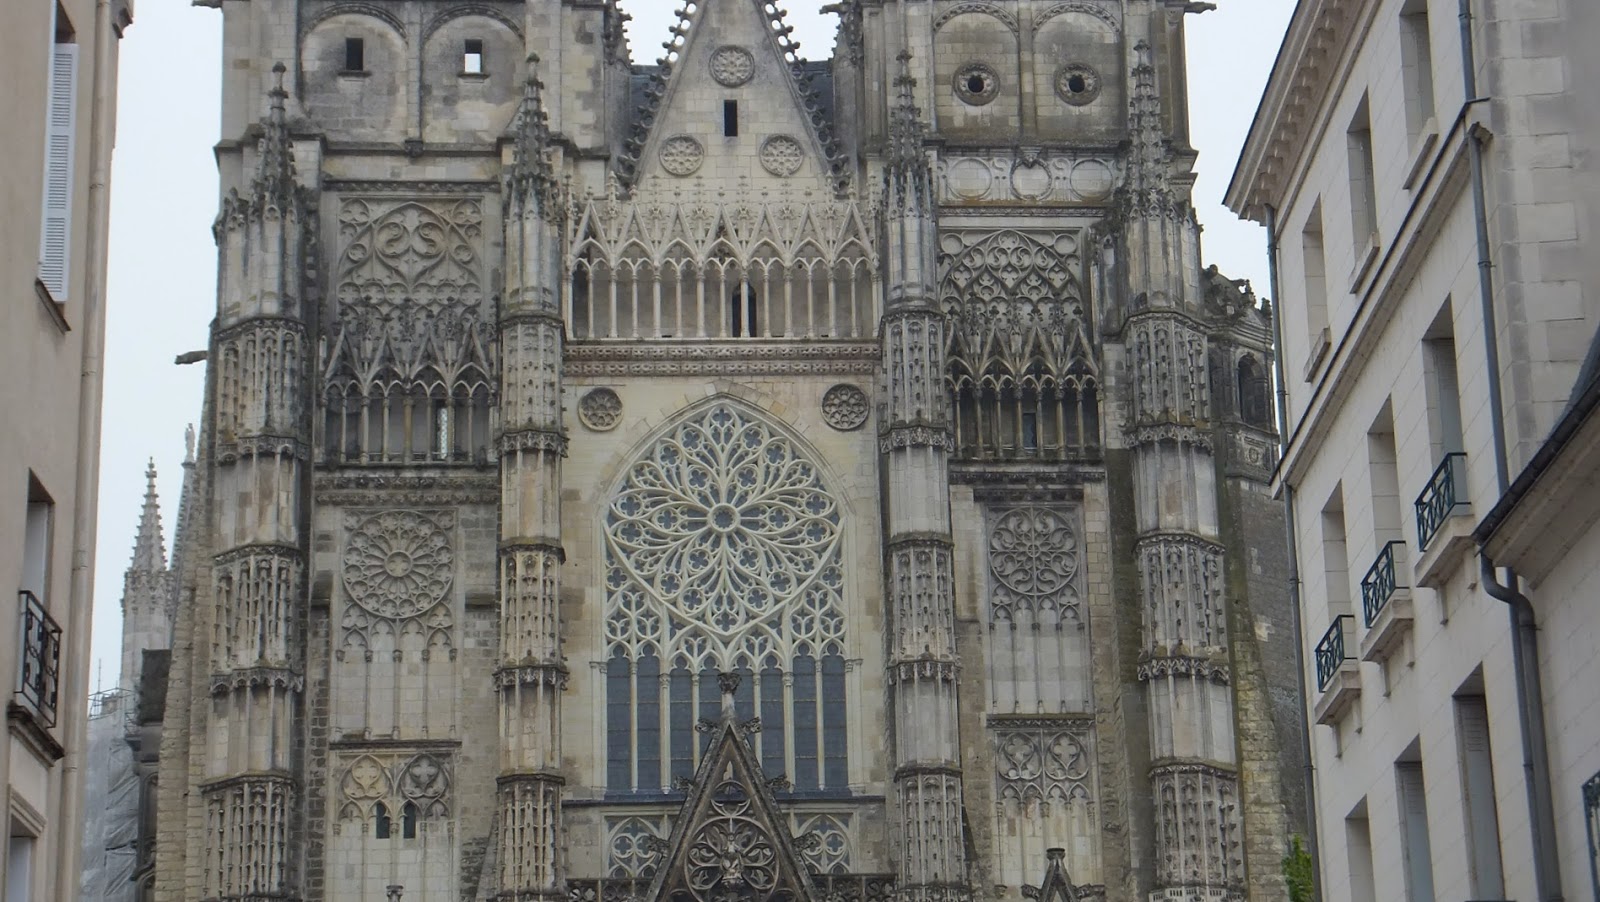 Saint Gatien de Tours, Tours, Francia, Elisa N, Blog de Viajes, Lifestyle, Travel